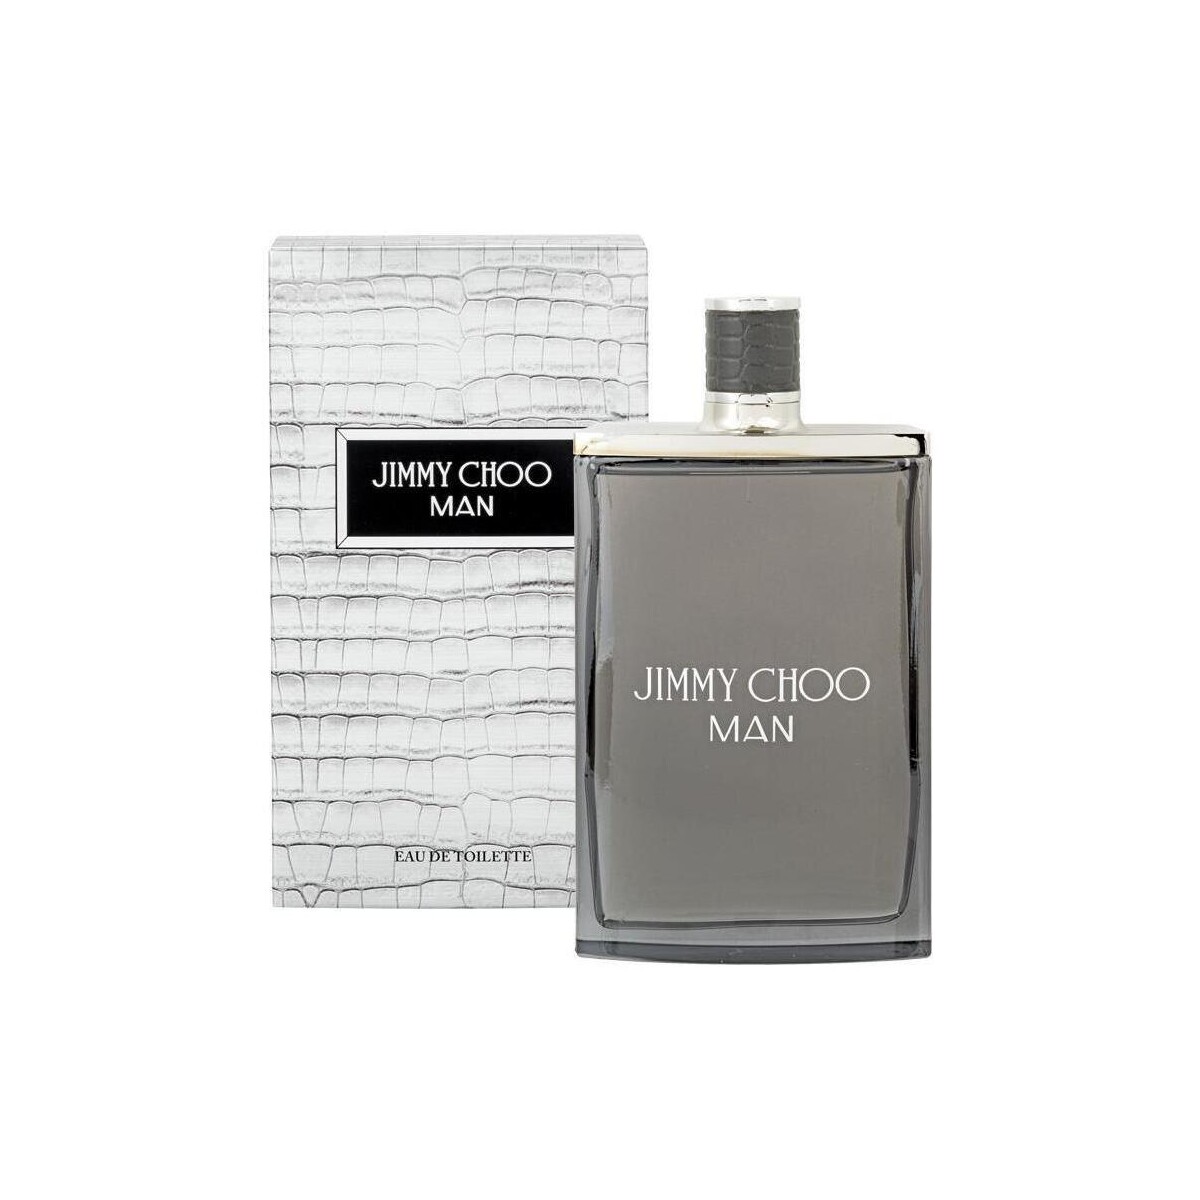 Beauté Homme Cologne Jimmy Choo Man - eau de toilette - 200ml - vaporisateur Jimmy Choo Man - cologne - 200ml - spray